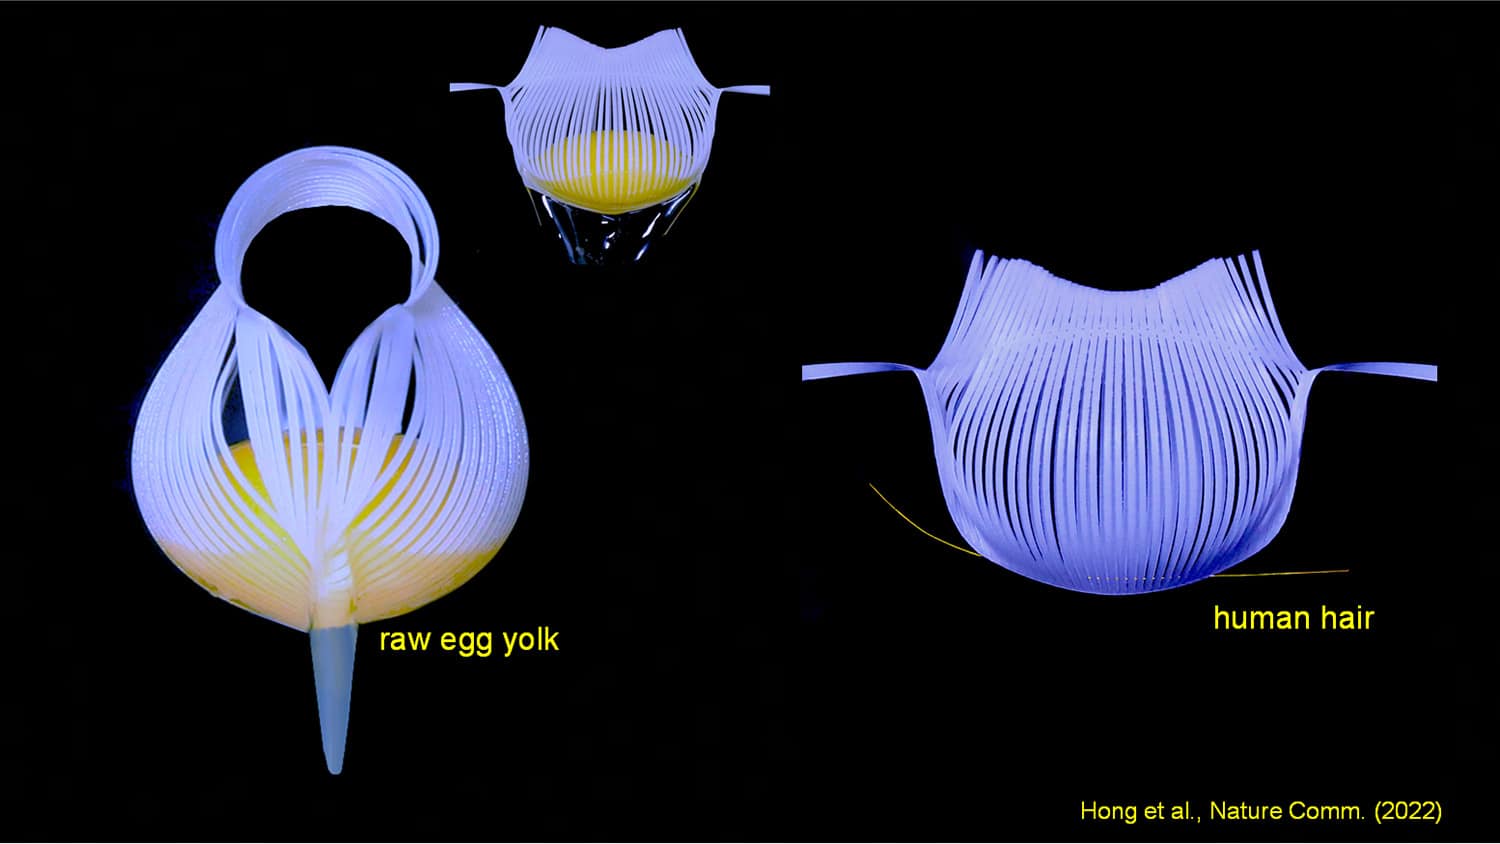 三张独立的图片显示了一个夹住蛋黄的装置